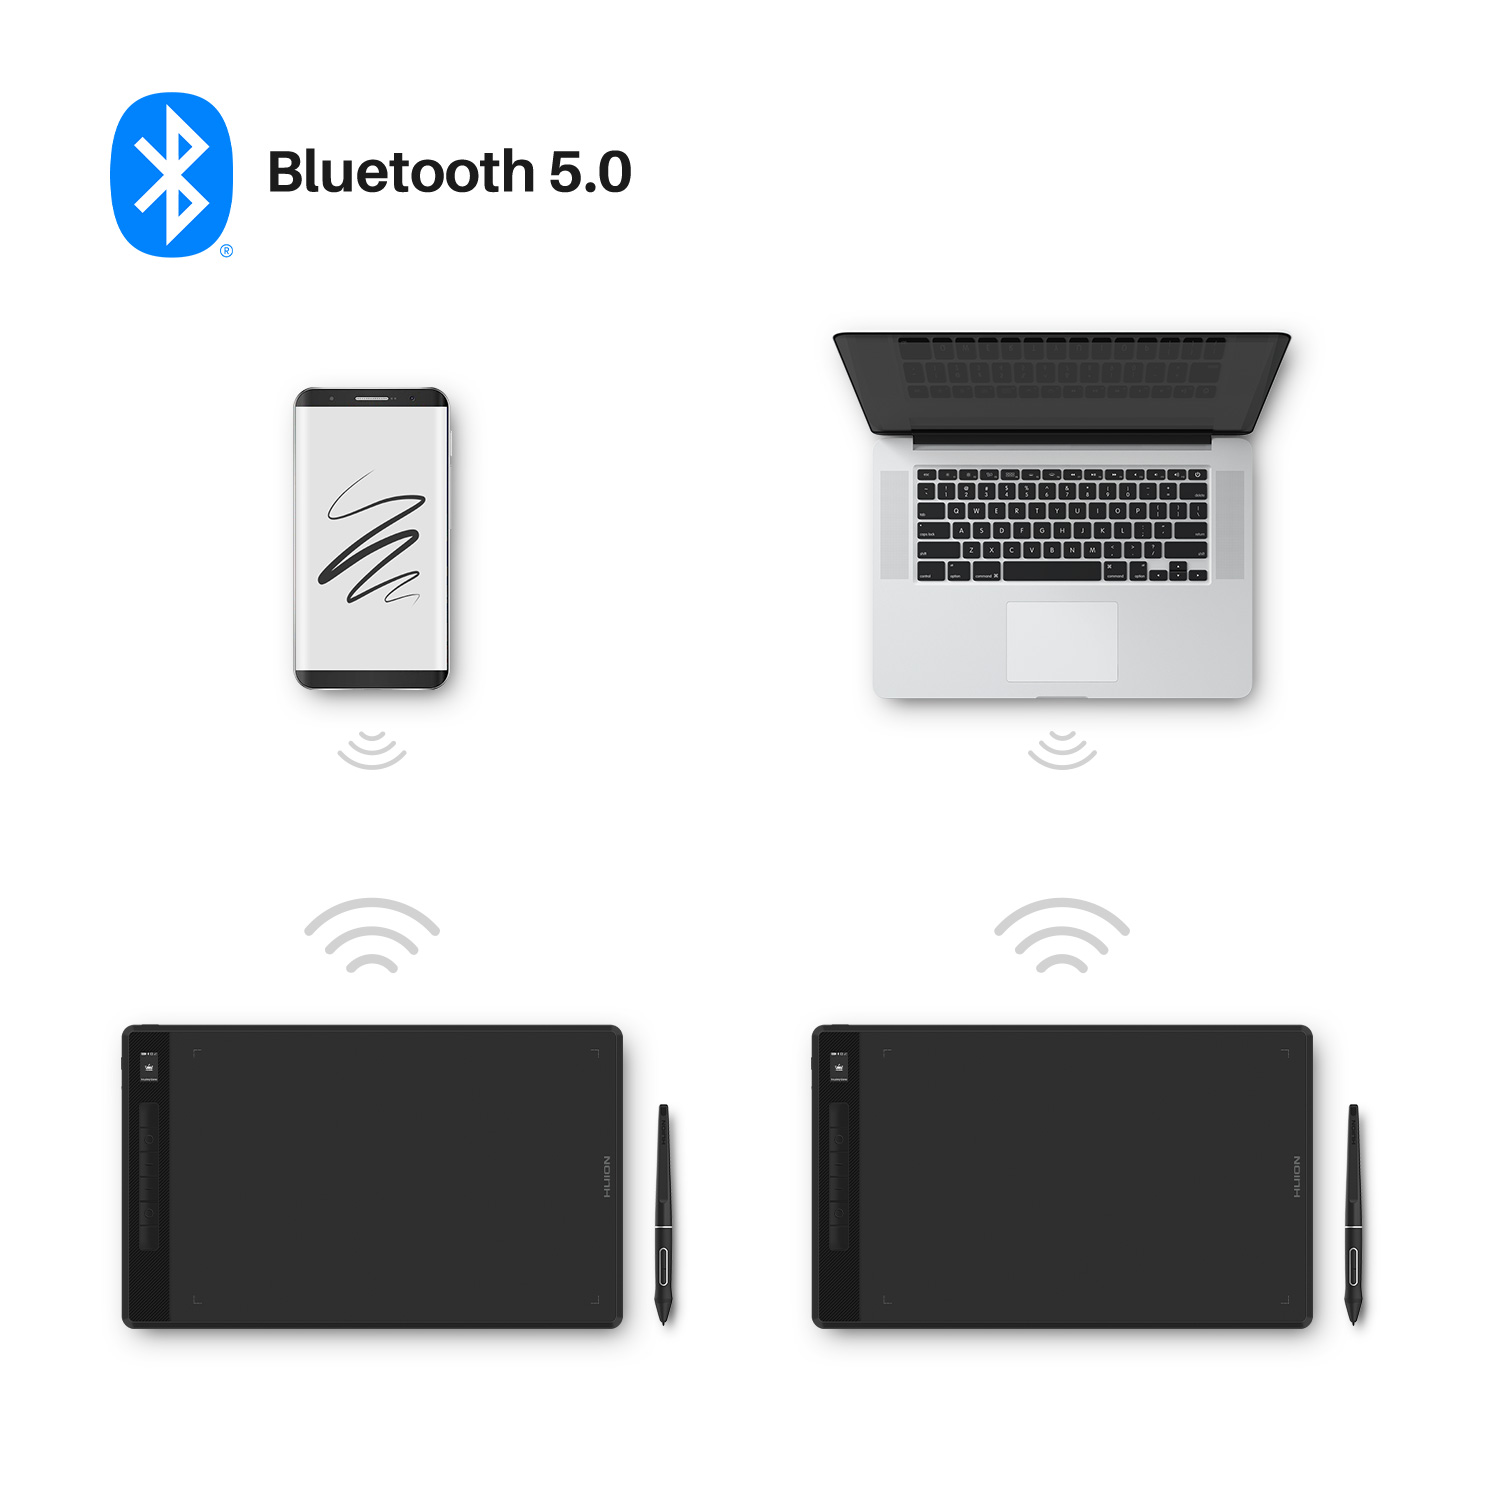 Huion 超大ワークエリア Bluetooth ワイヤレスペンタブレット Inspiroy 